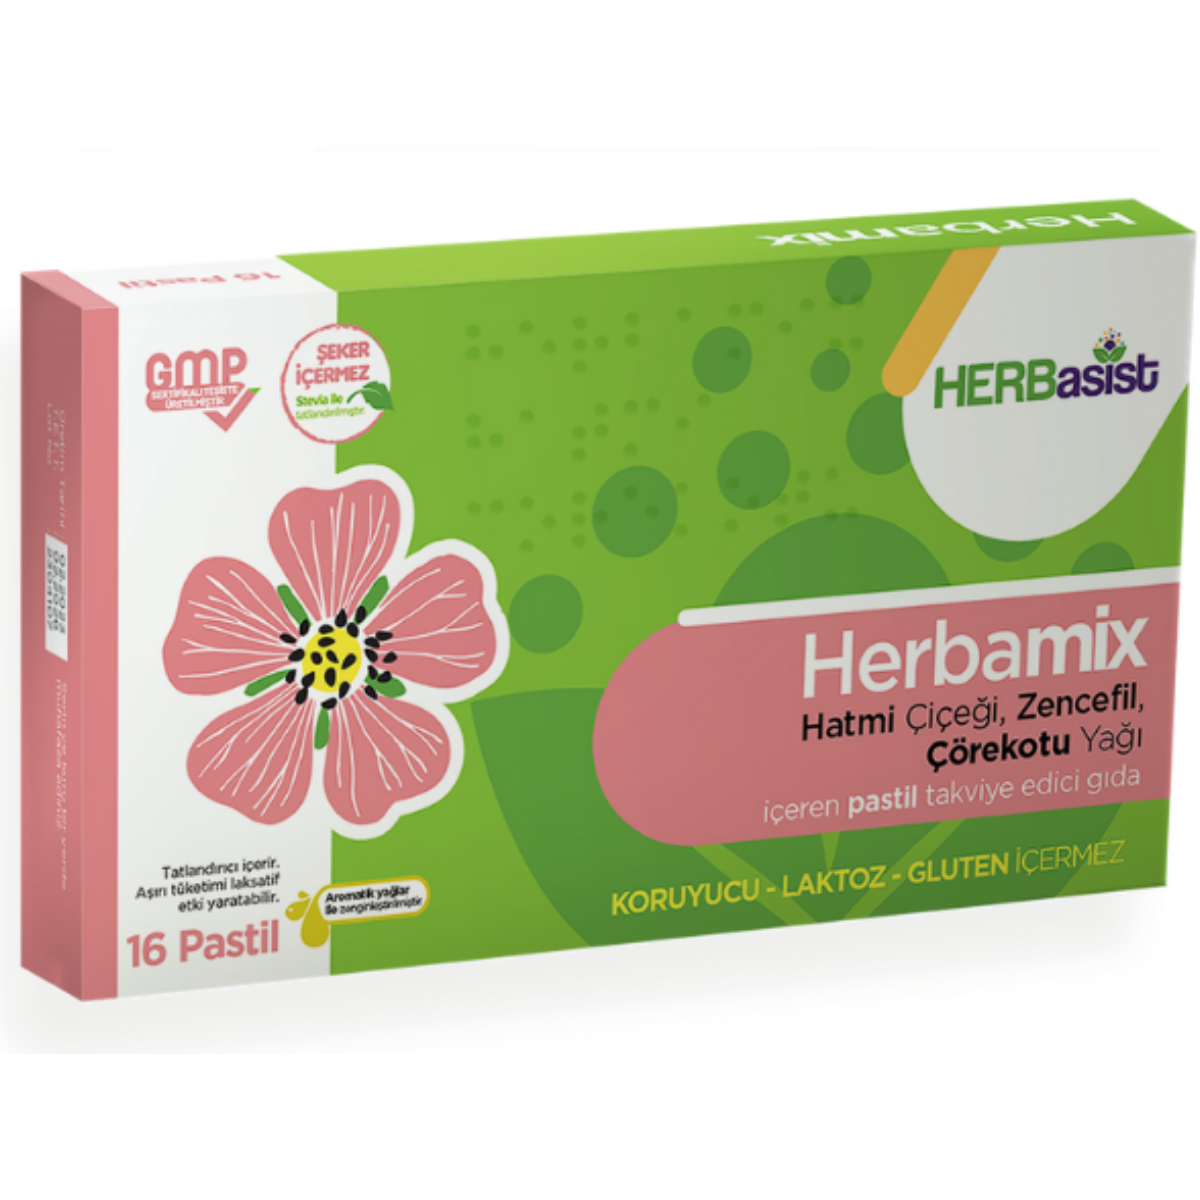 HERBasist Herbamix 16 Pastil